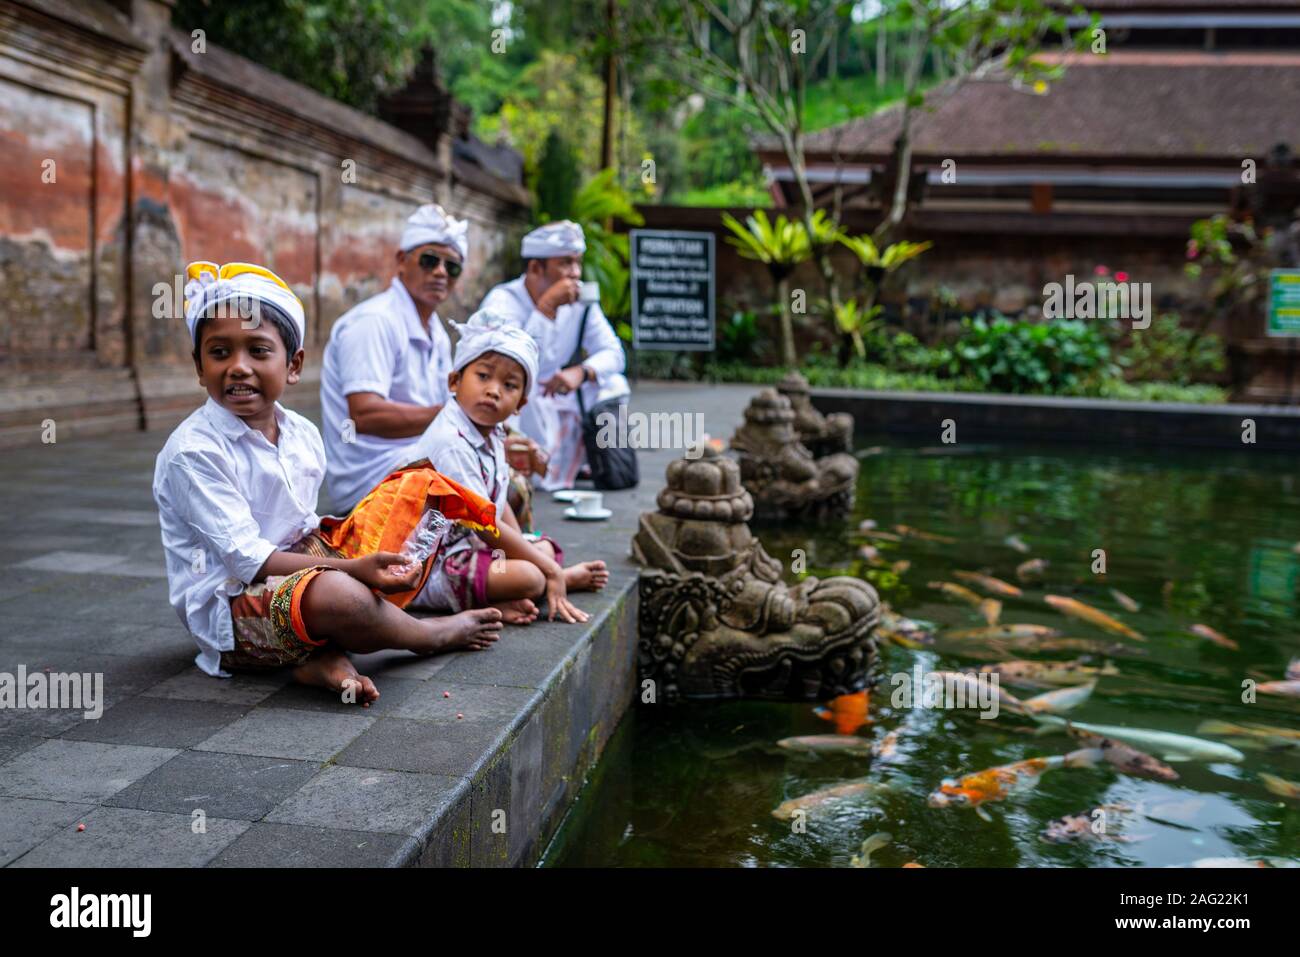 Bali, Indonesien, September 4, 2017: jungen Jungen und ihre Väter tragen traditionelle Kostüme, Tirta Empul Tempel. An einem bewölkten Nachmittag genommen. Stockfoto